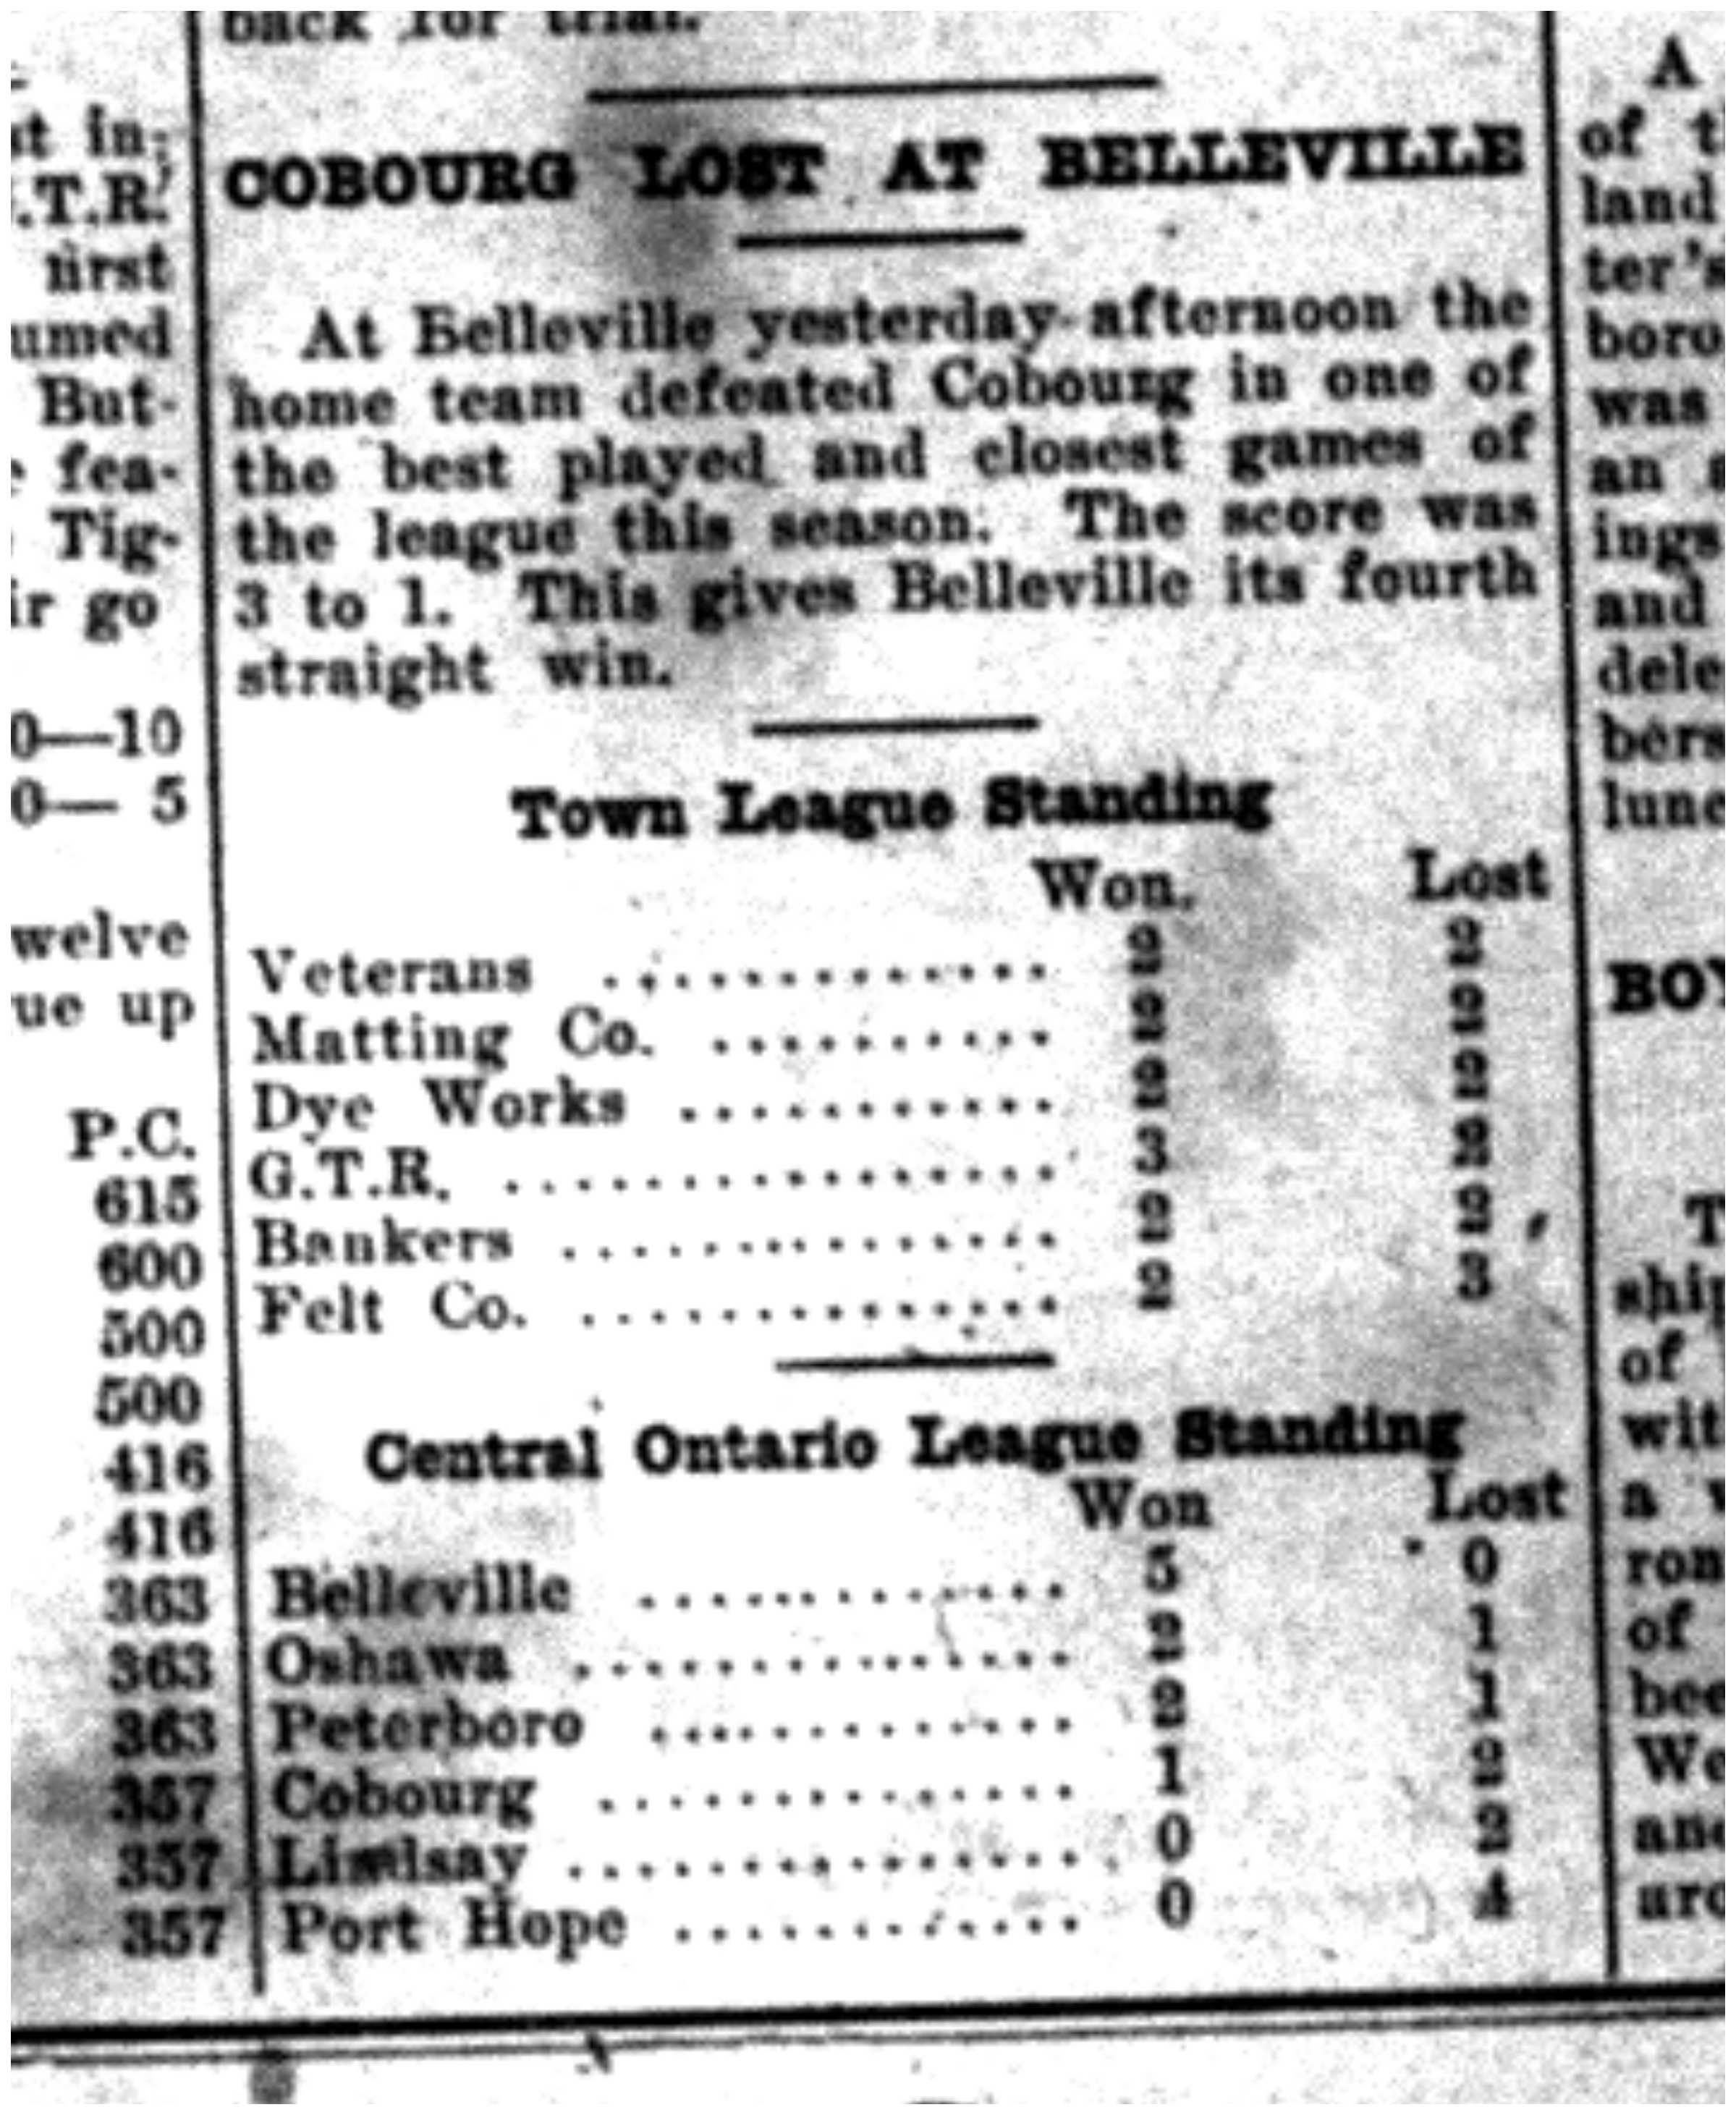 1920-06-17 Baseball -Standings